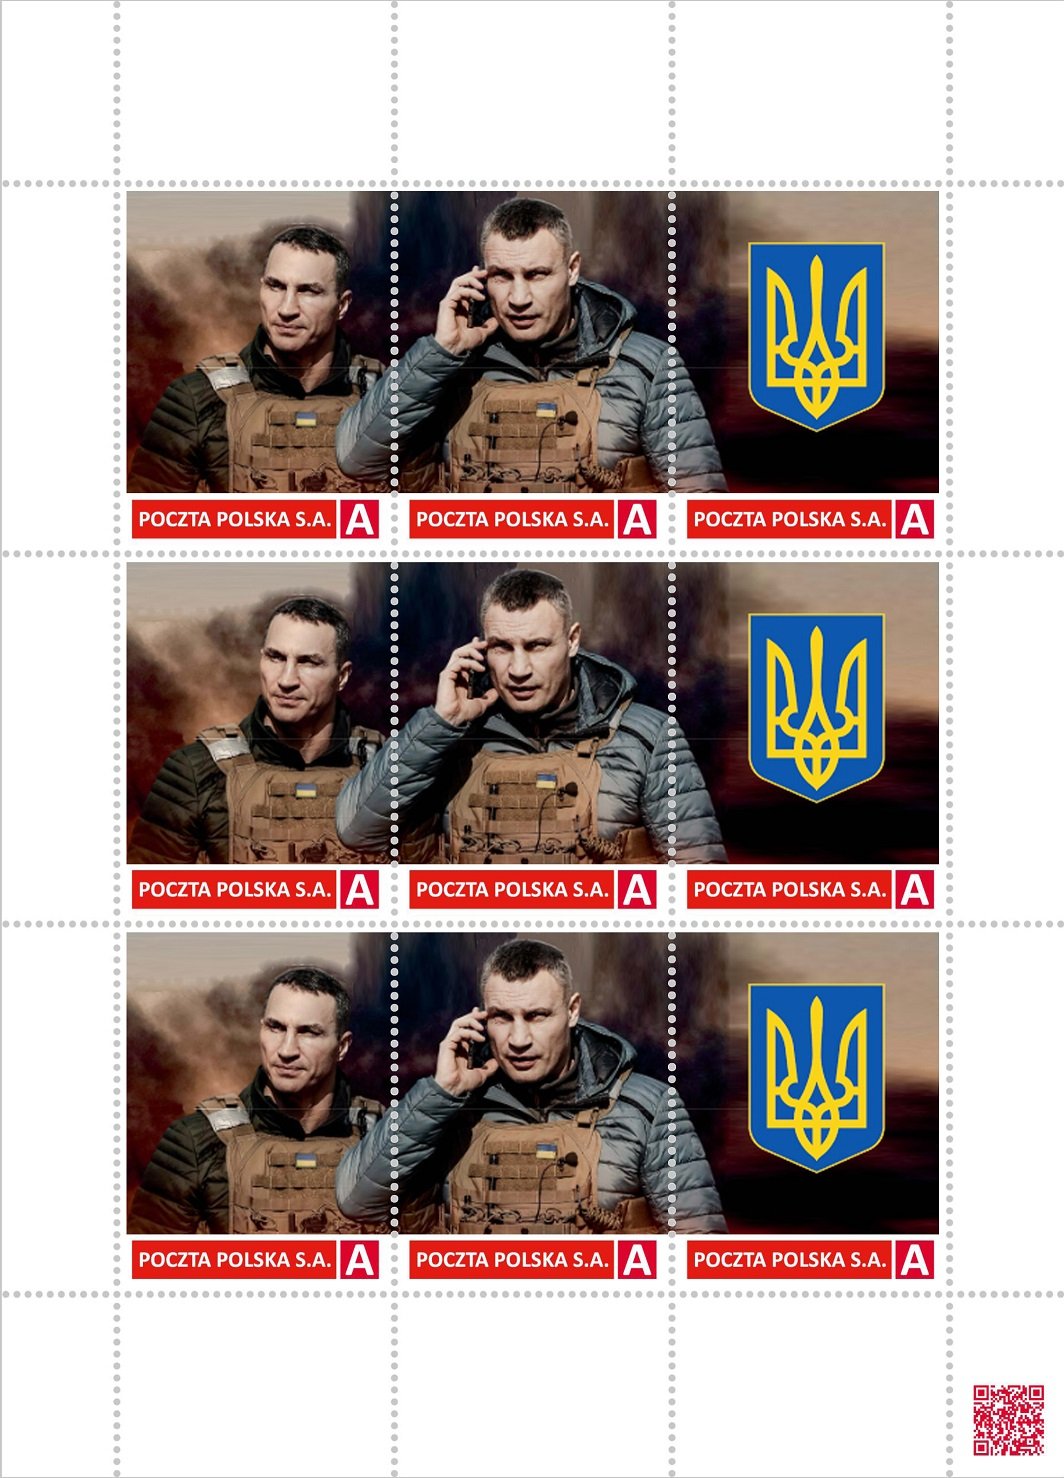 Краківський депутат випустить марку із зображенням братів Кличків на підтримку українців 292504025 5624140874297197 7420801172441065870 n